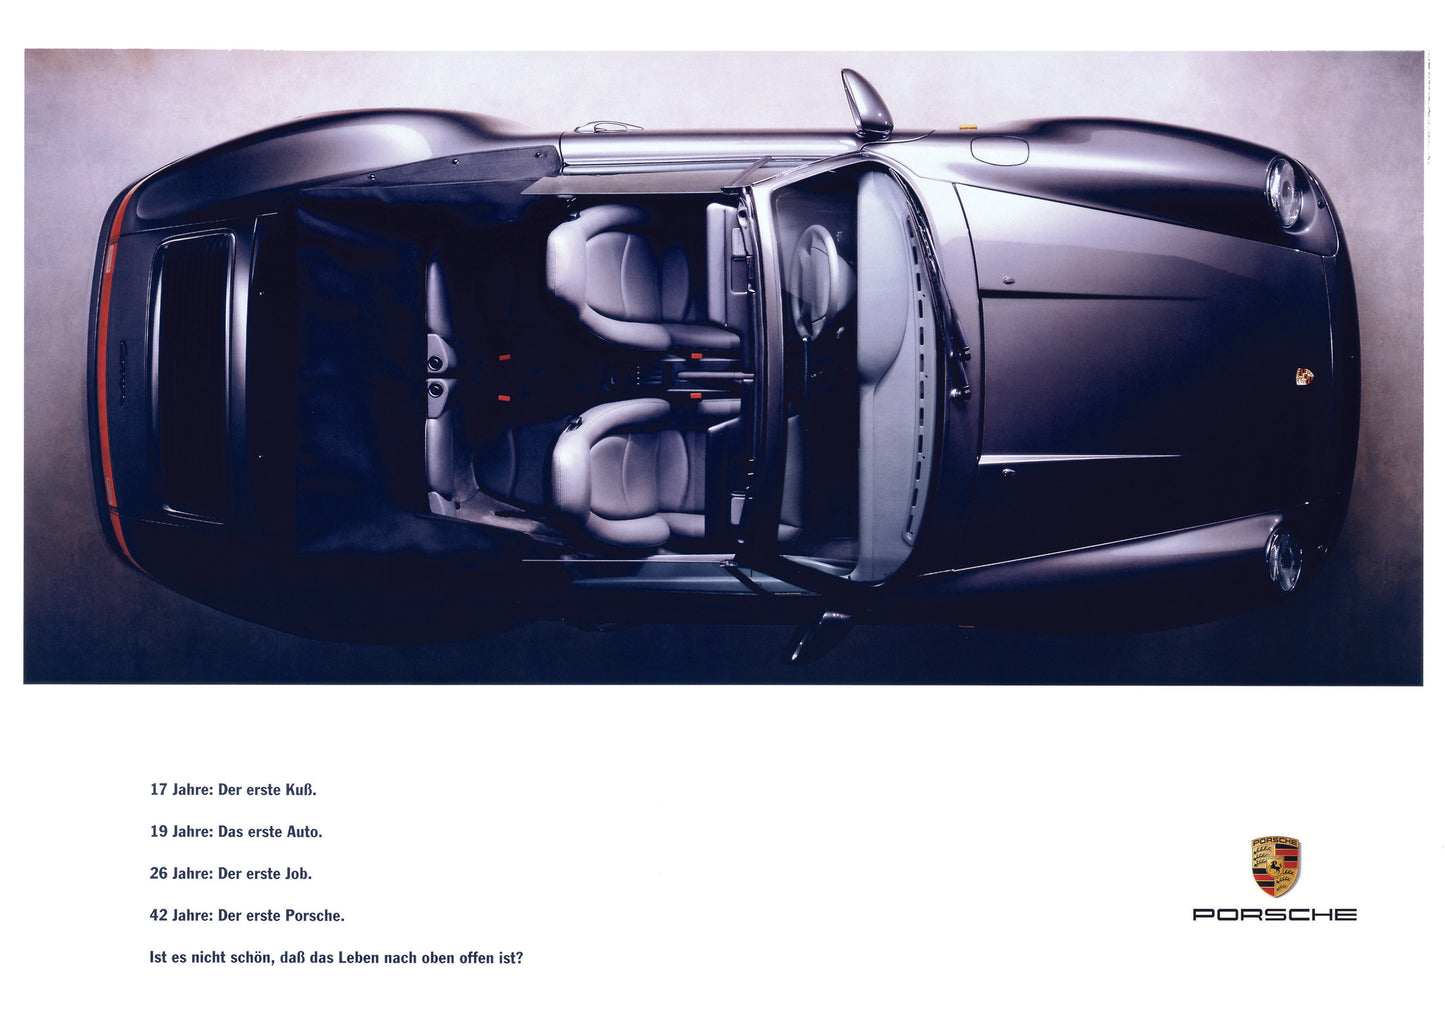 Les 2 livres " Une vie en Range Rover + Une vie en Porsche 911" + 10 posters A4 et livraison gratuite 